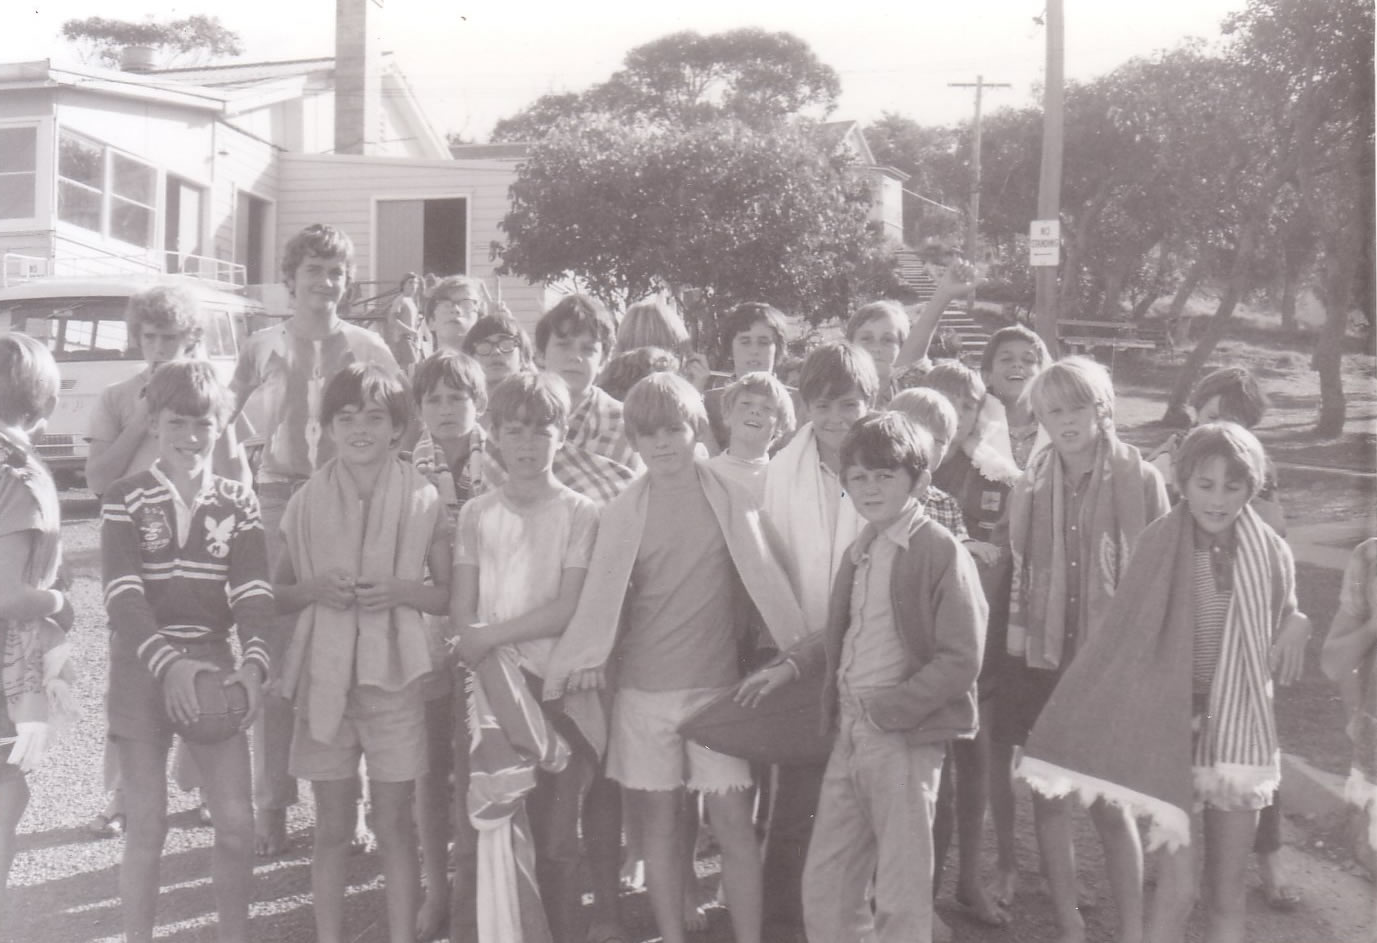 Choir camp 1973 - group photo